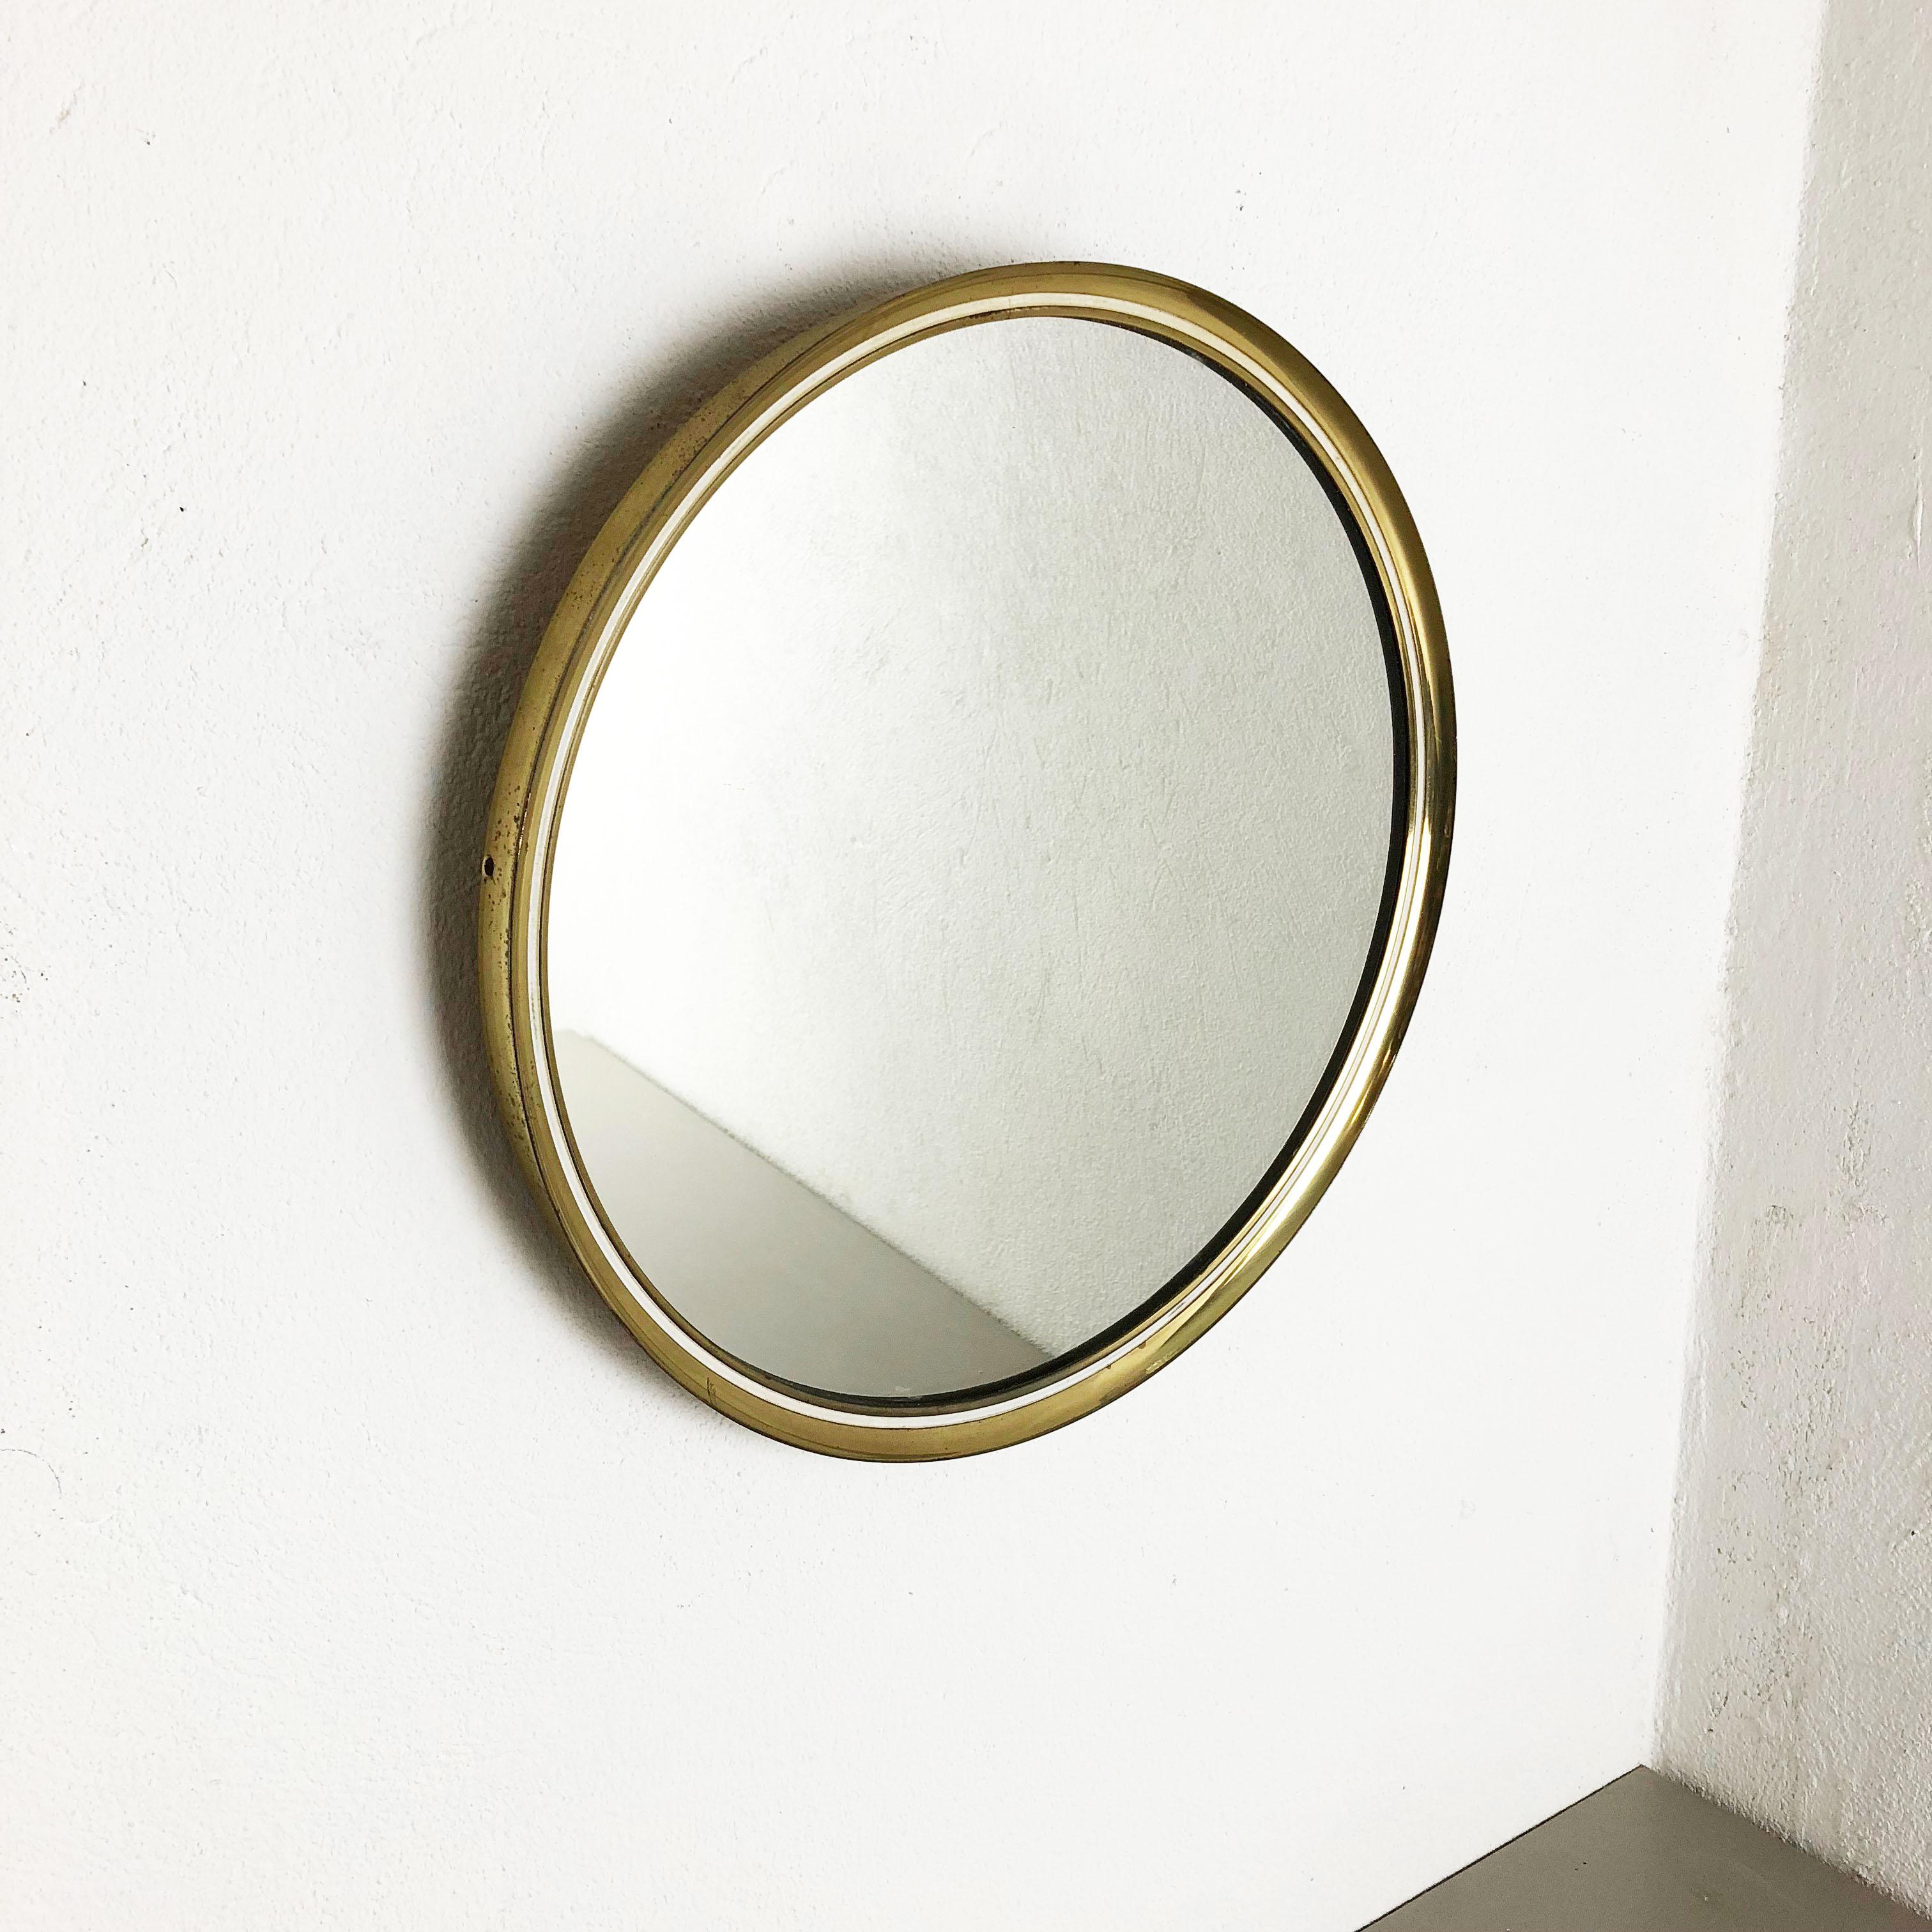 Article:

Wall mirror


Producer:

Vereinigte Werkstätten München / Münchener Zierspiegel


Origin:

Germany


Material:

Wood, glass, metal and brass


Decade:

1950s


Description:

This original midcentury wall mirror